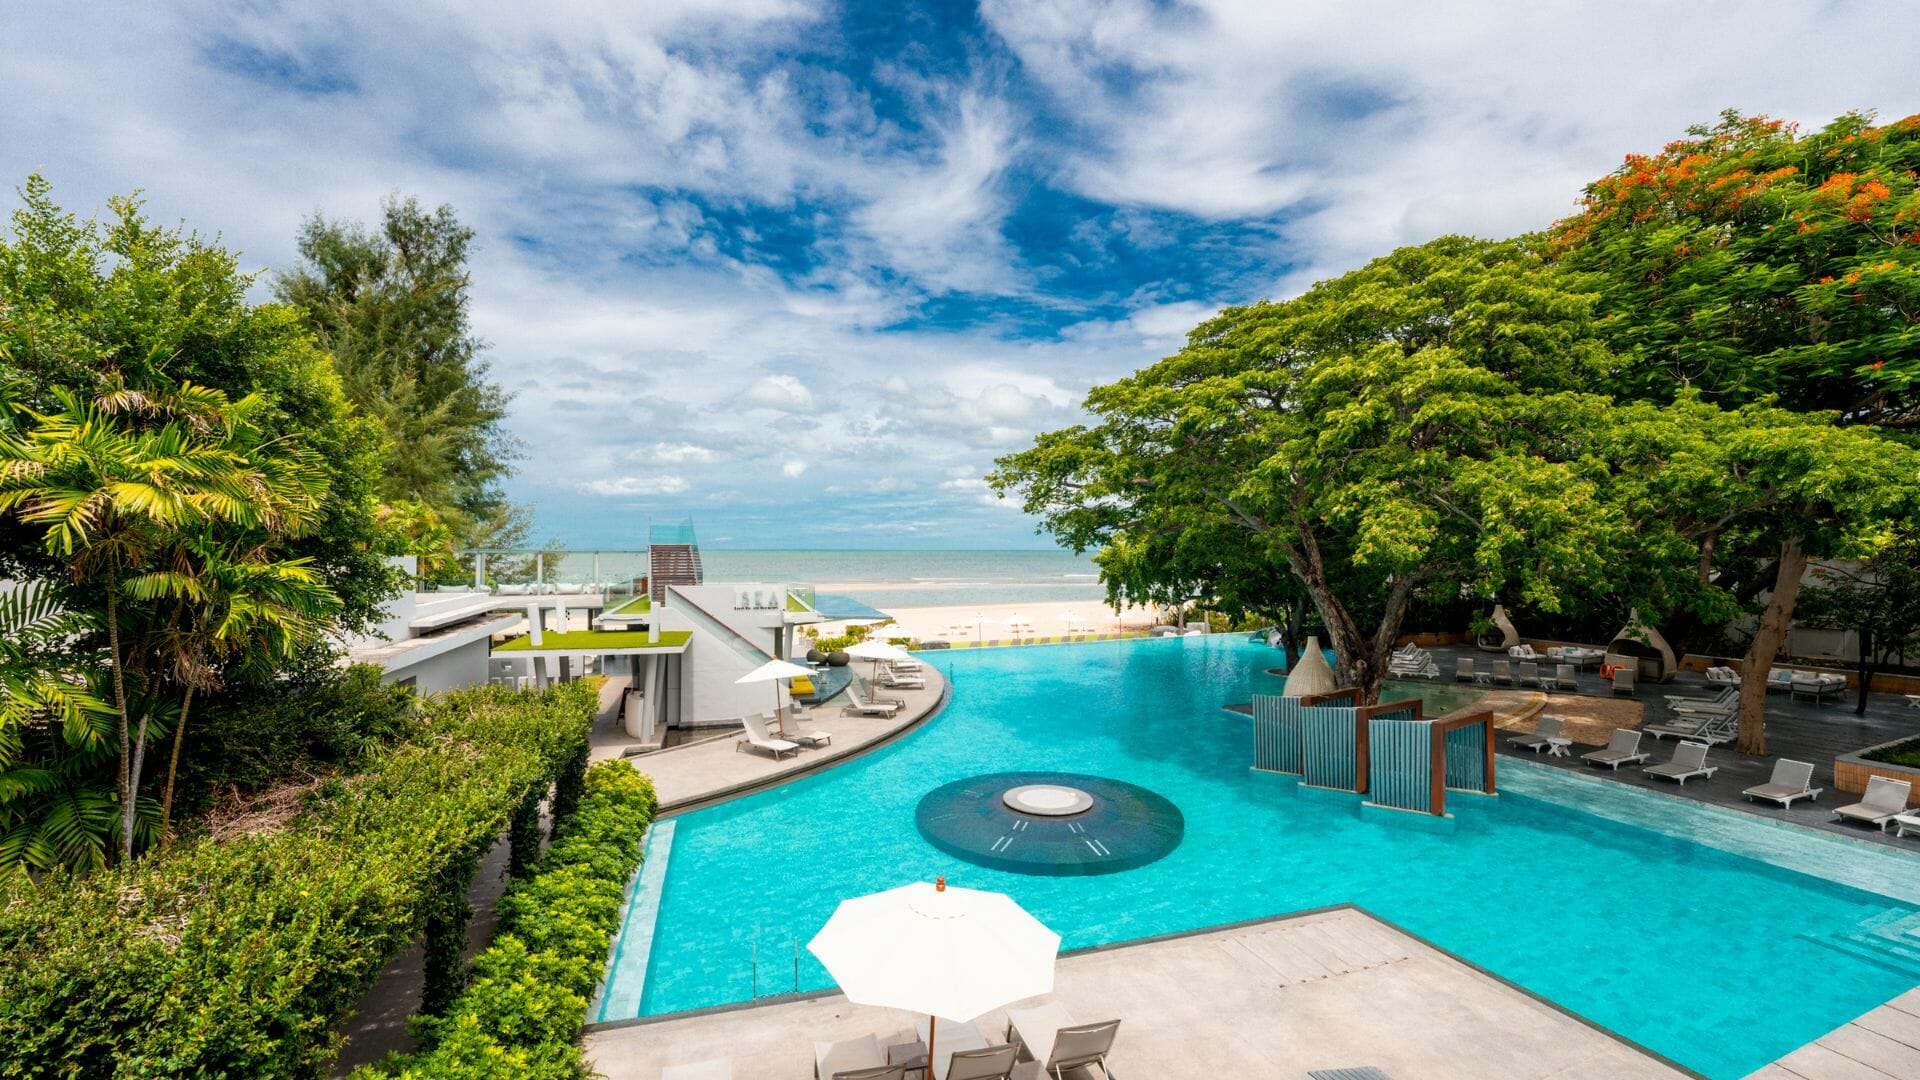 Veranda Resort & Villas Hua Hin – Cha Am